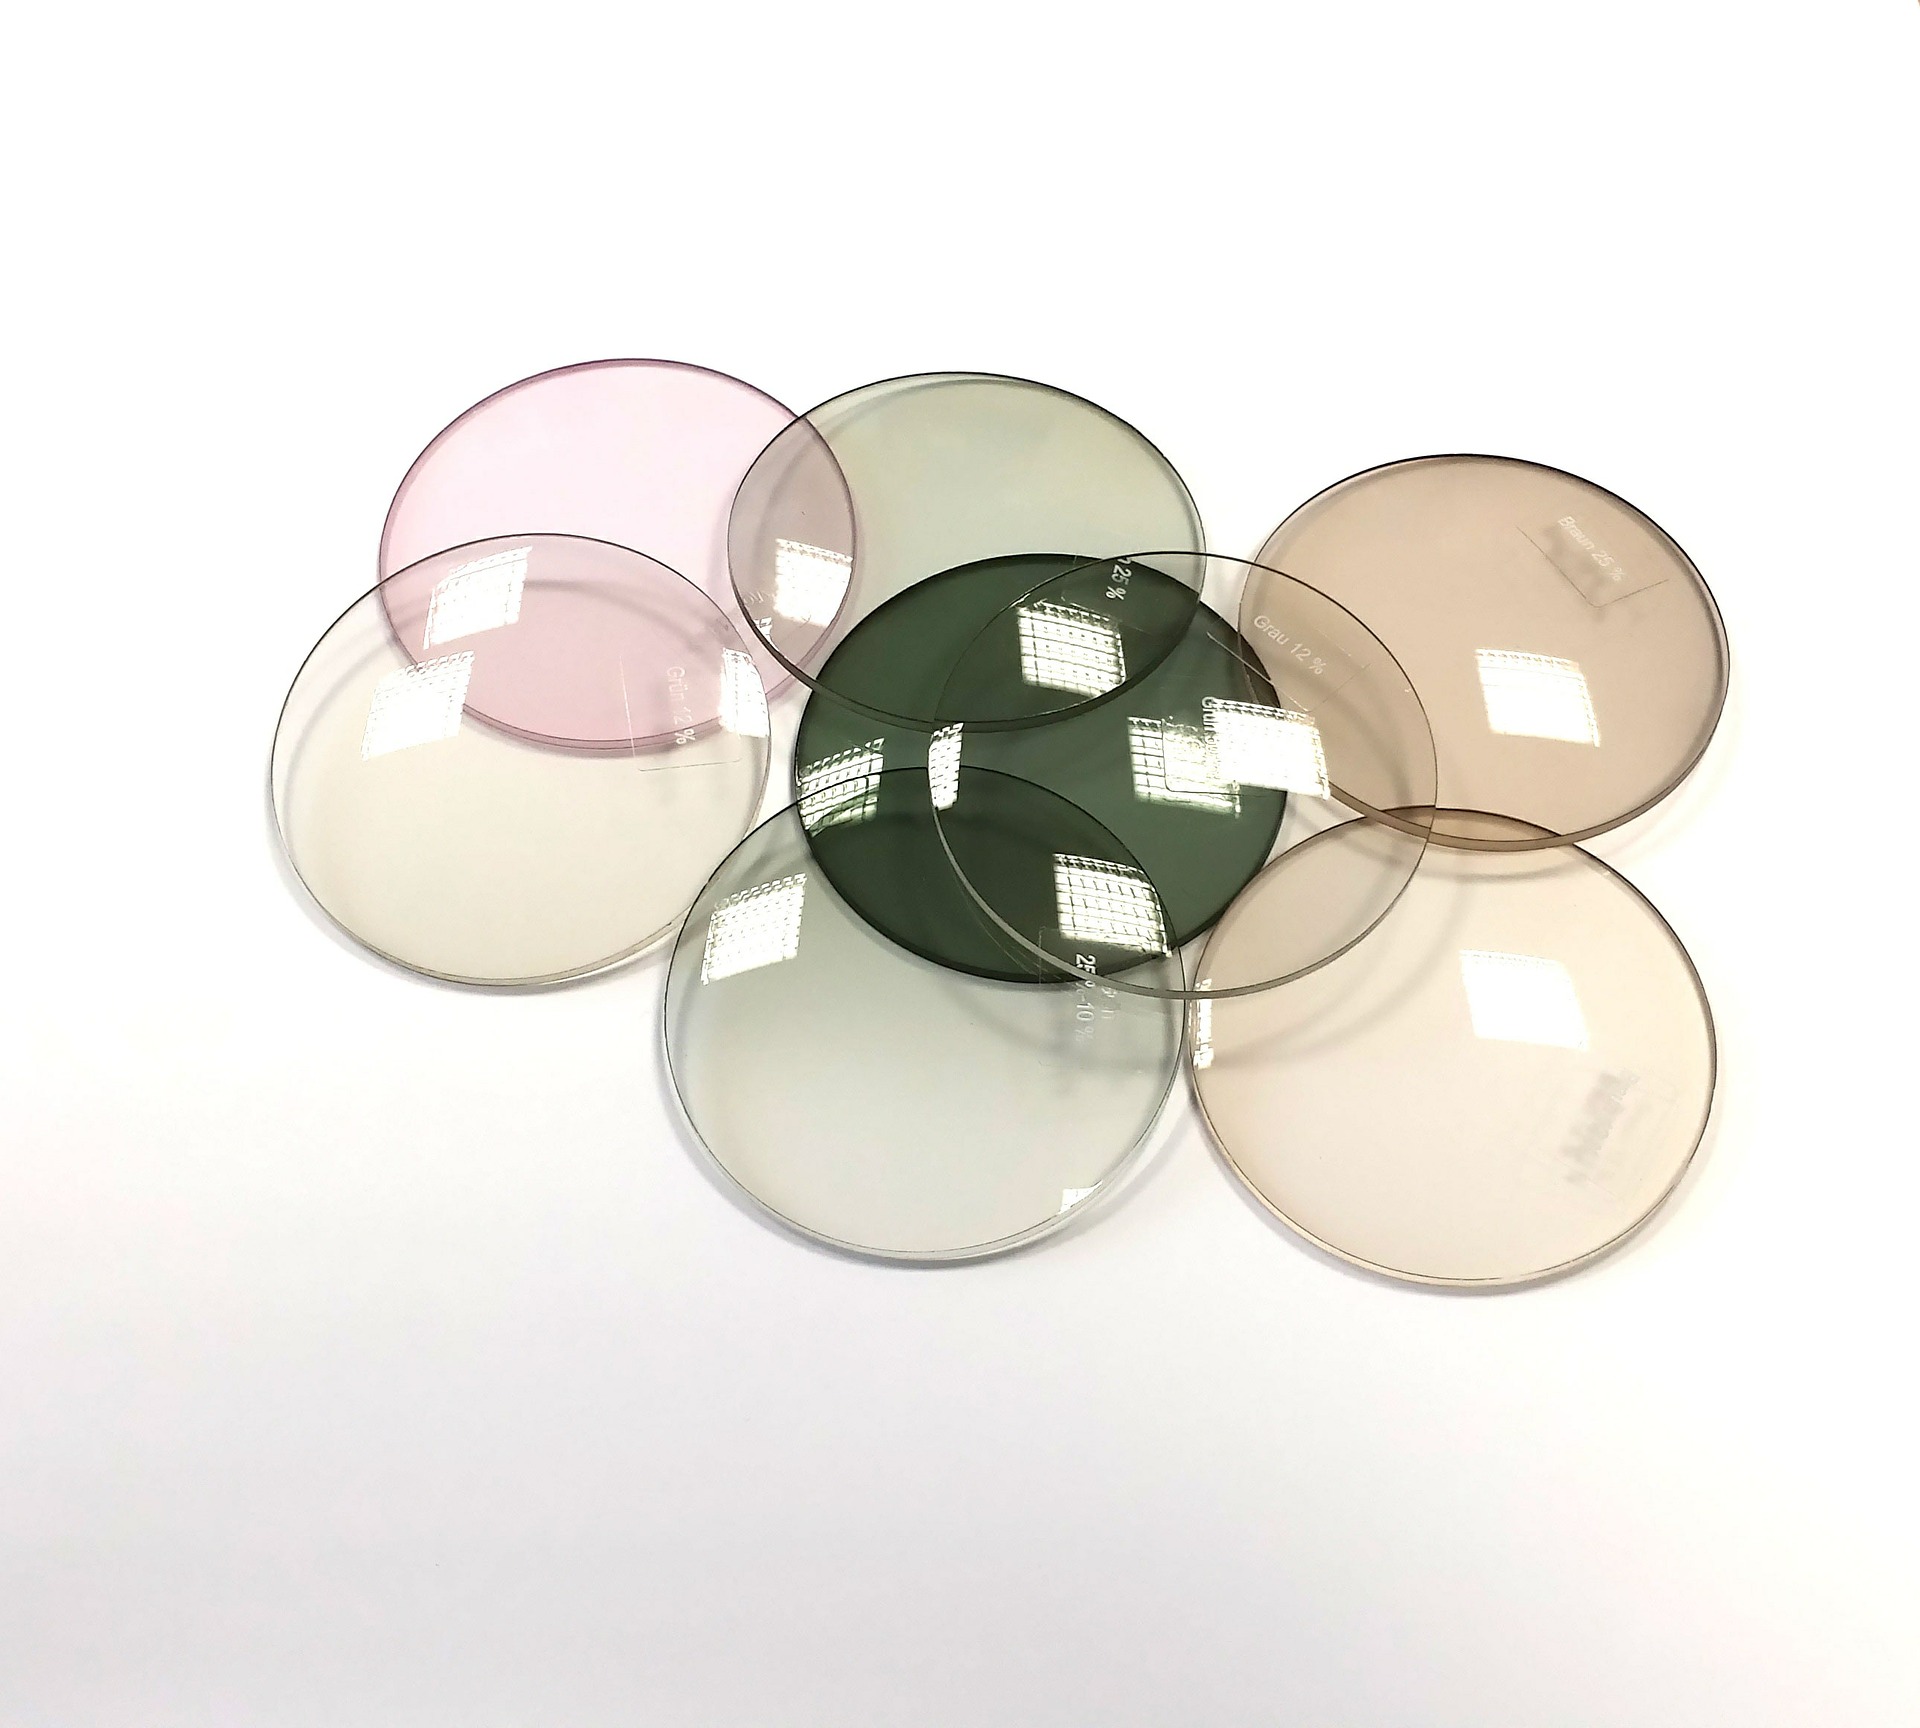 brillenglas-brillenglaeser-glas-kunststoff-mineralglas-unterschied-optik-weissmann-brille-brillen-kaufen-online-dioptrin-dispersion-farbe